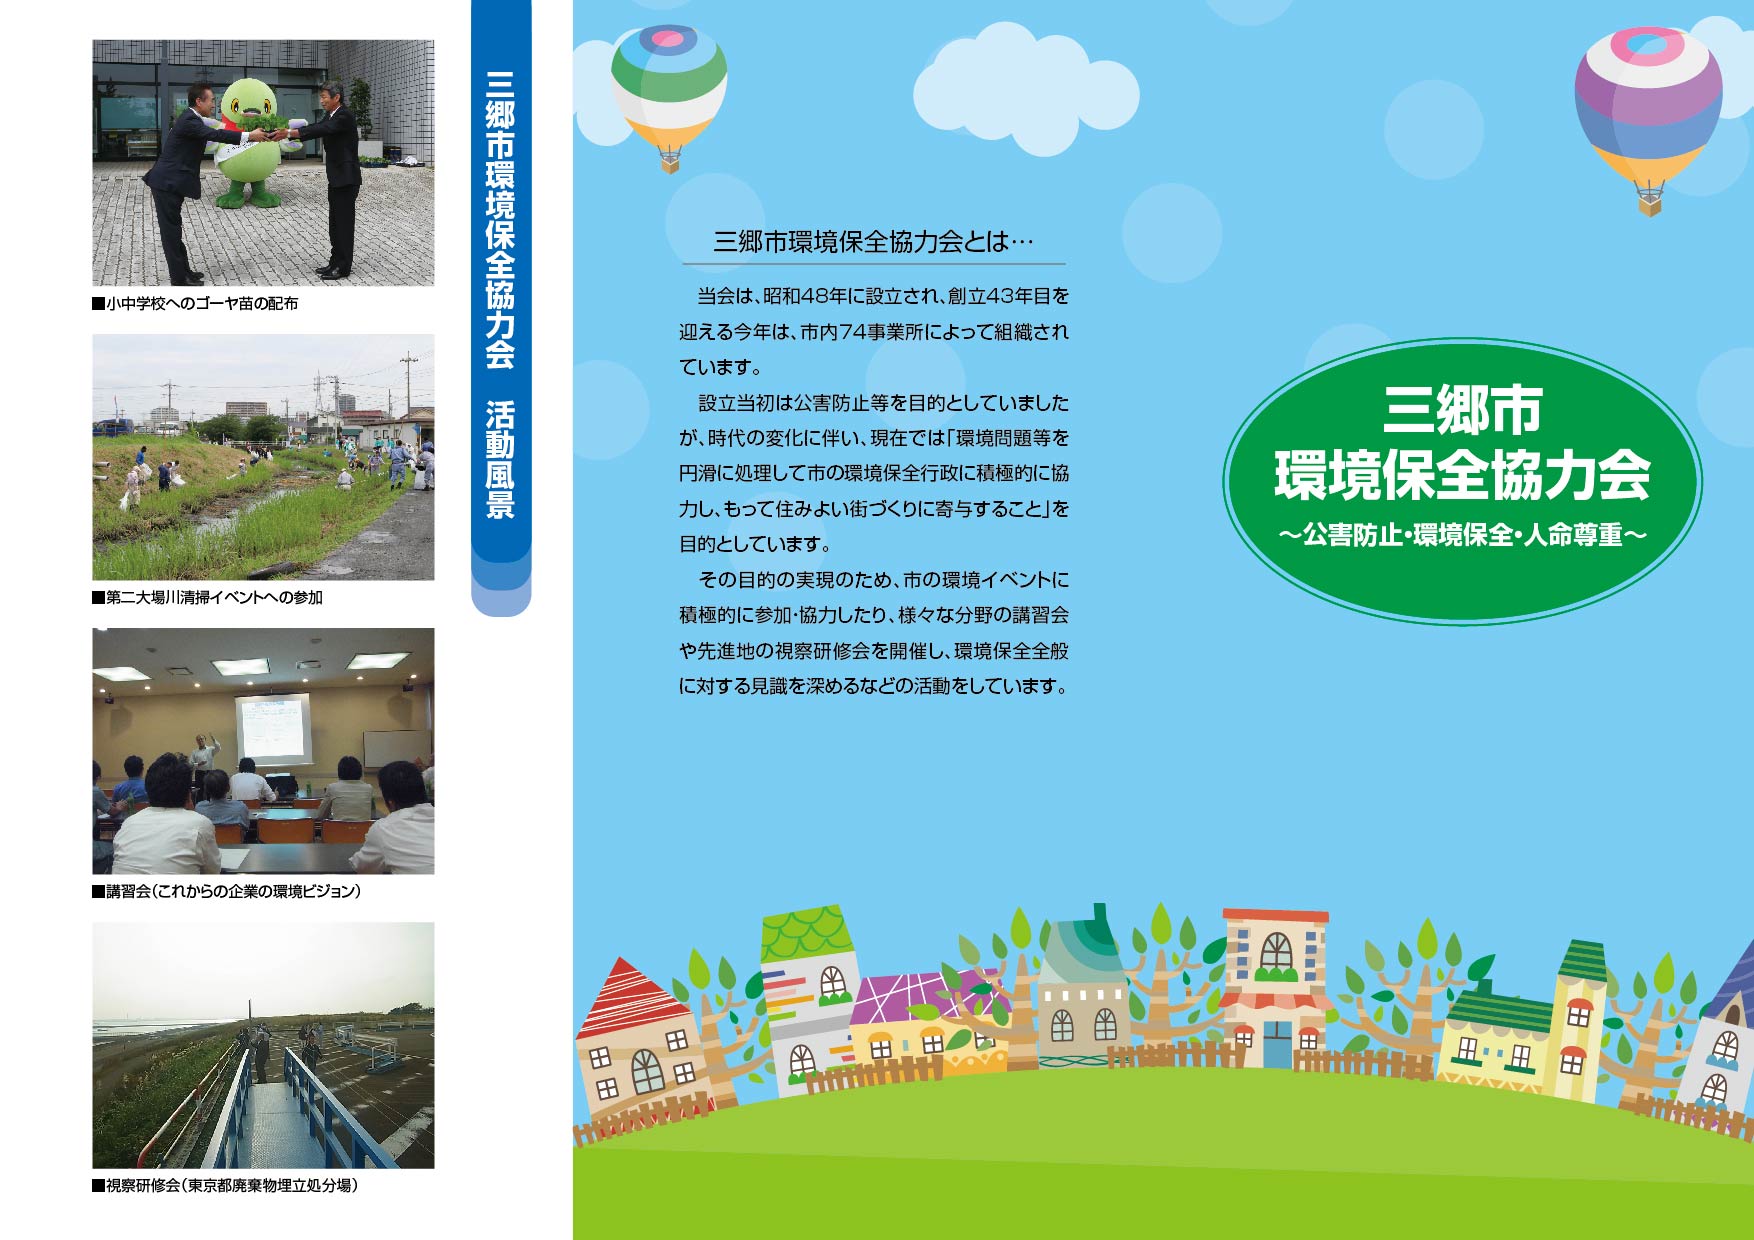 活動風景の4枚の写真と、三郷市環境保全協力会の啓発リーフレットの写真